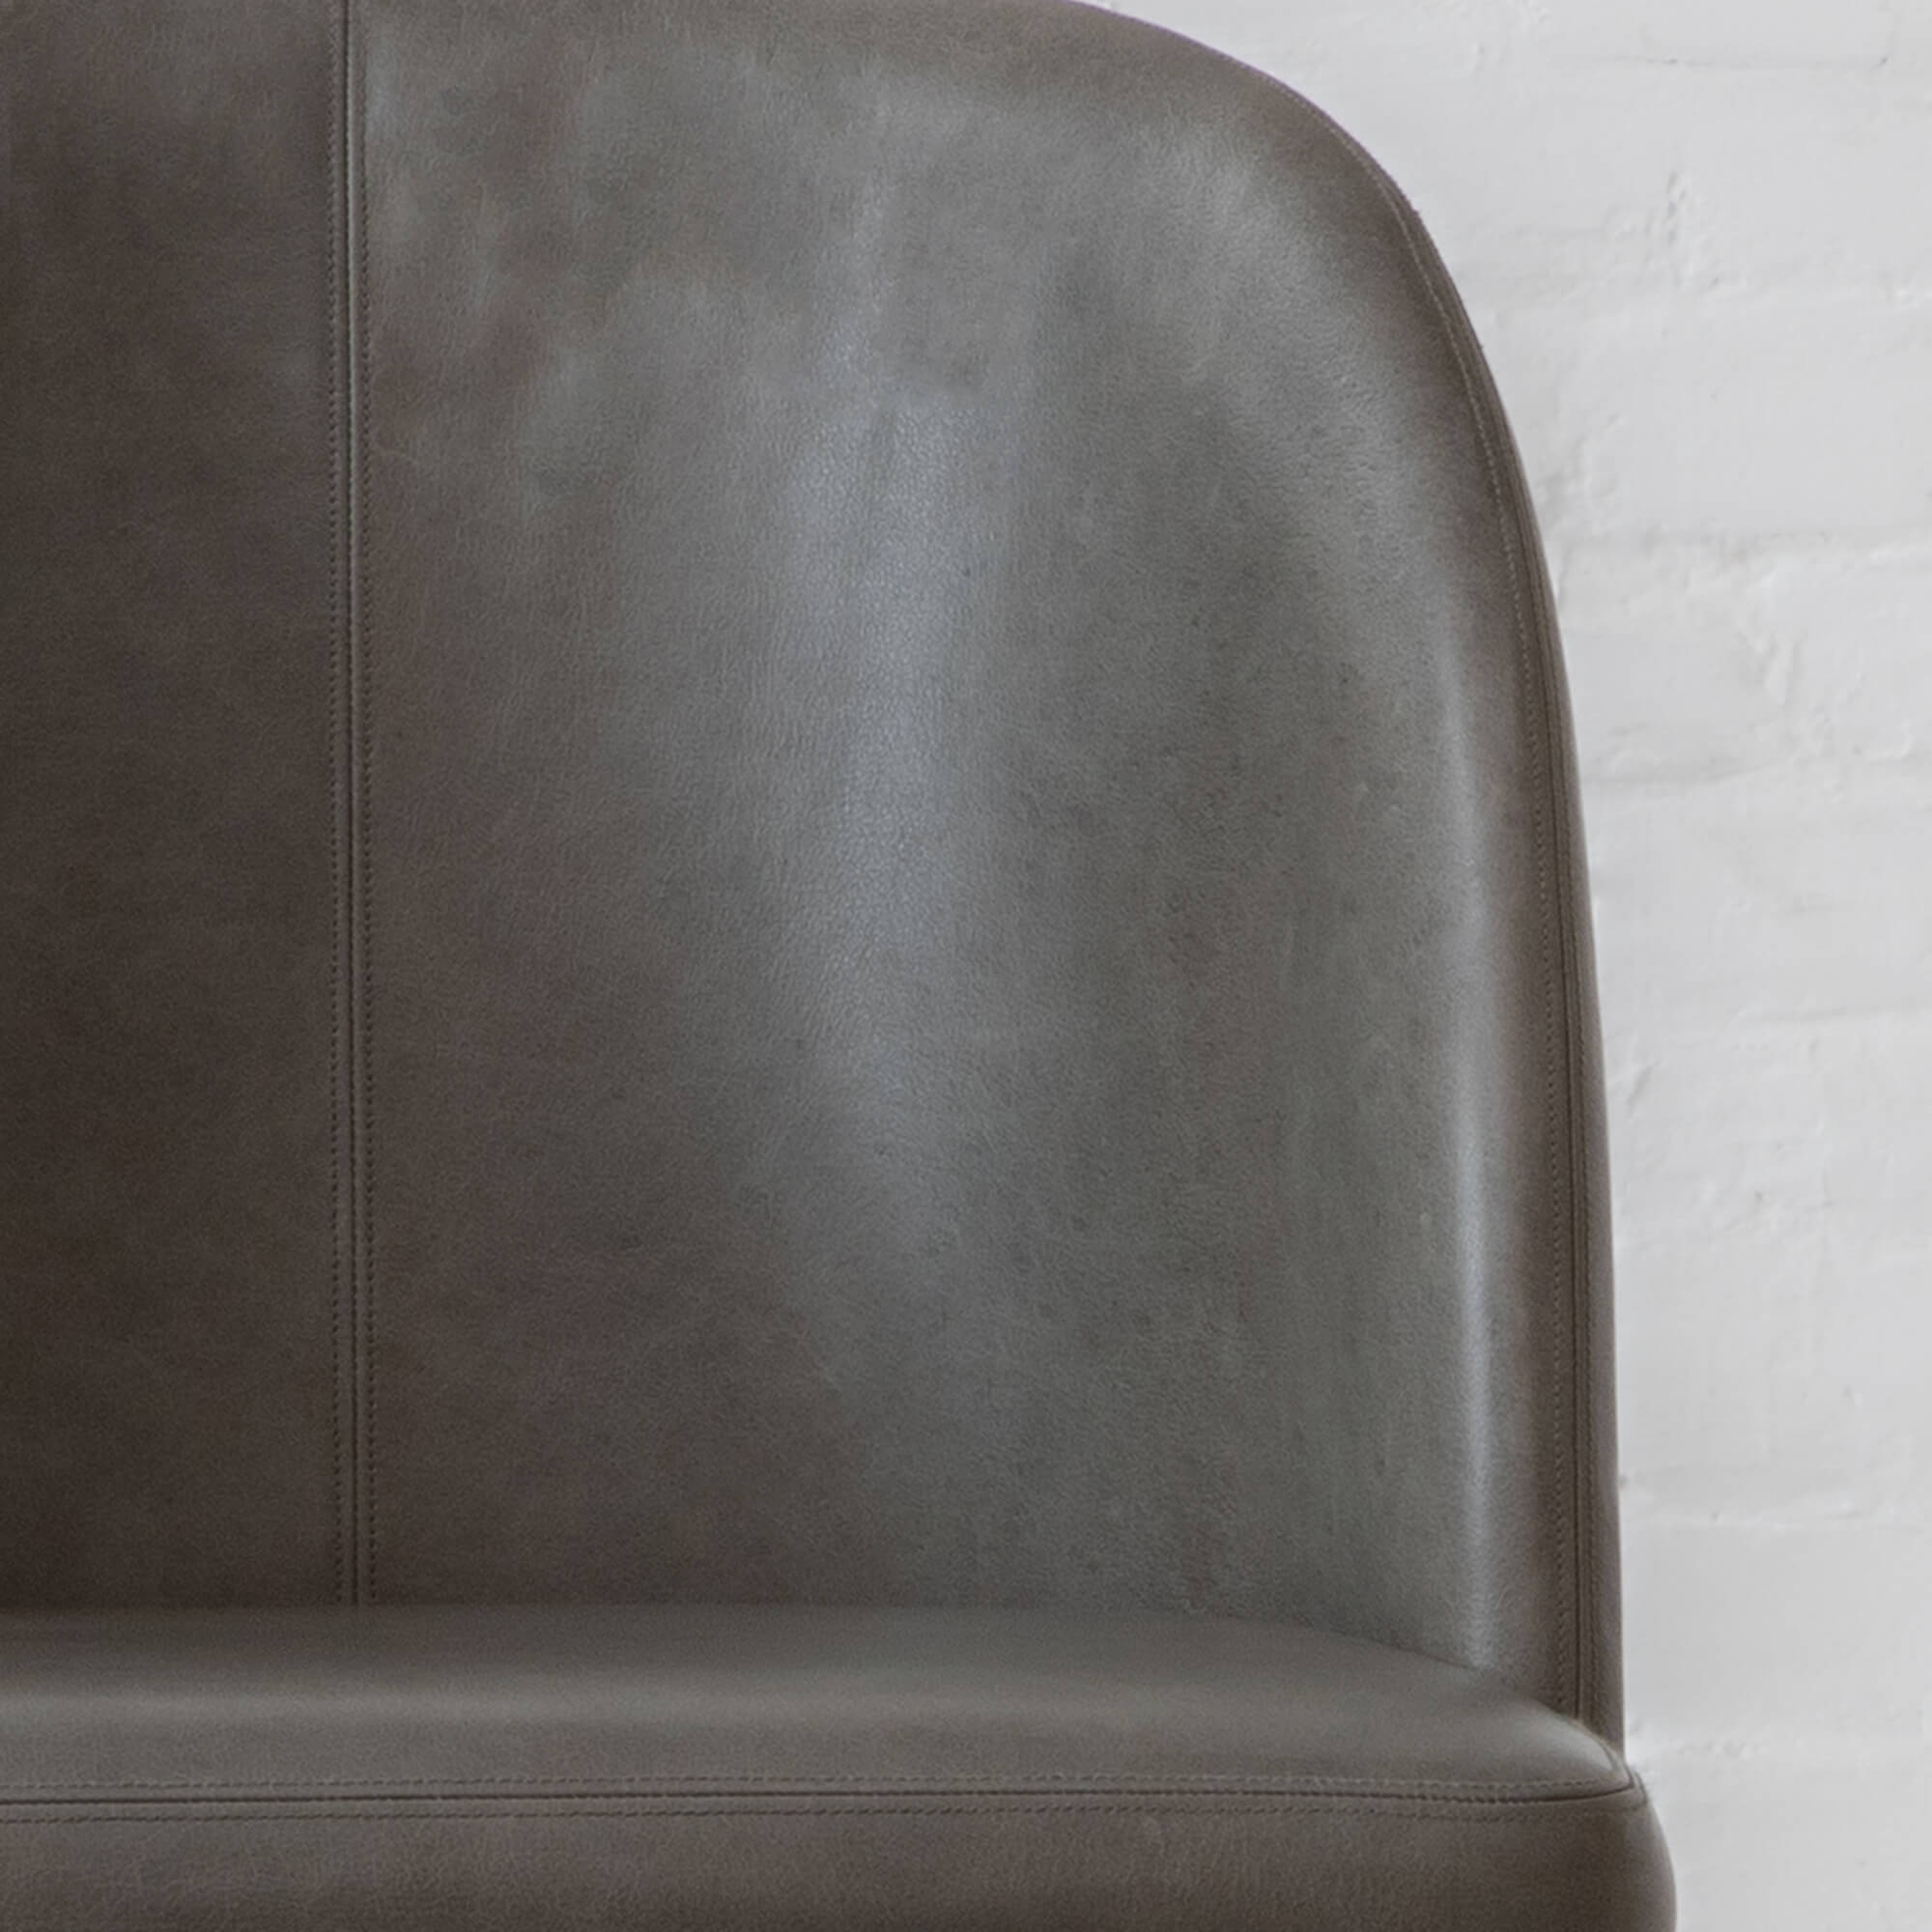 Dublin Leather Dining Chair